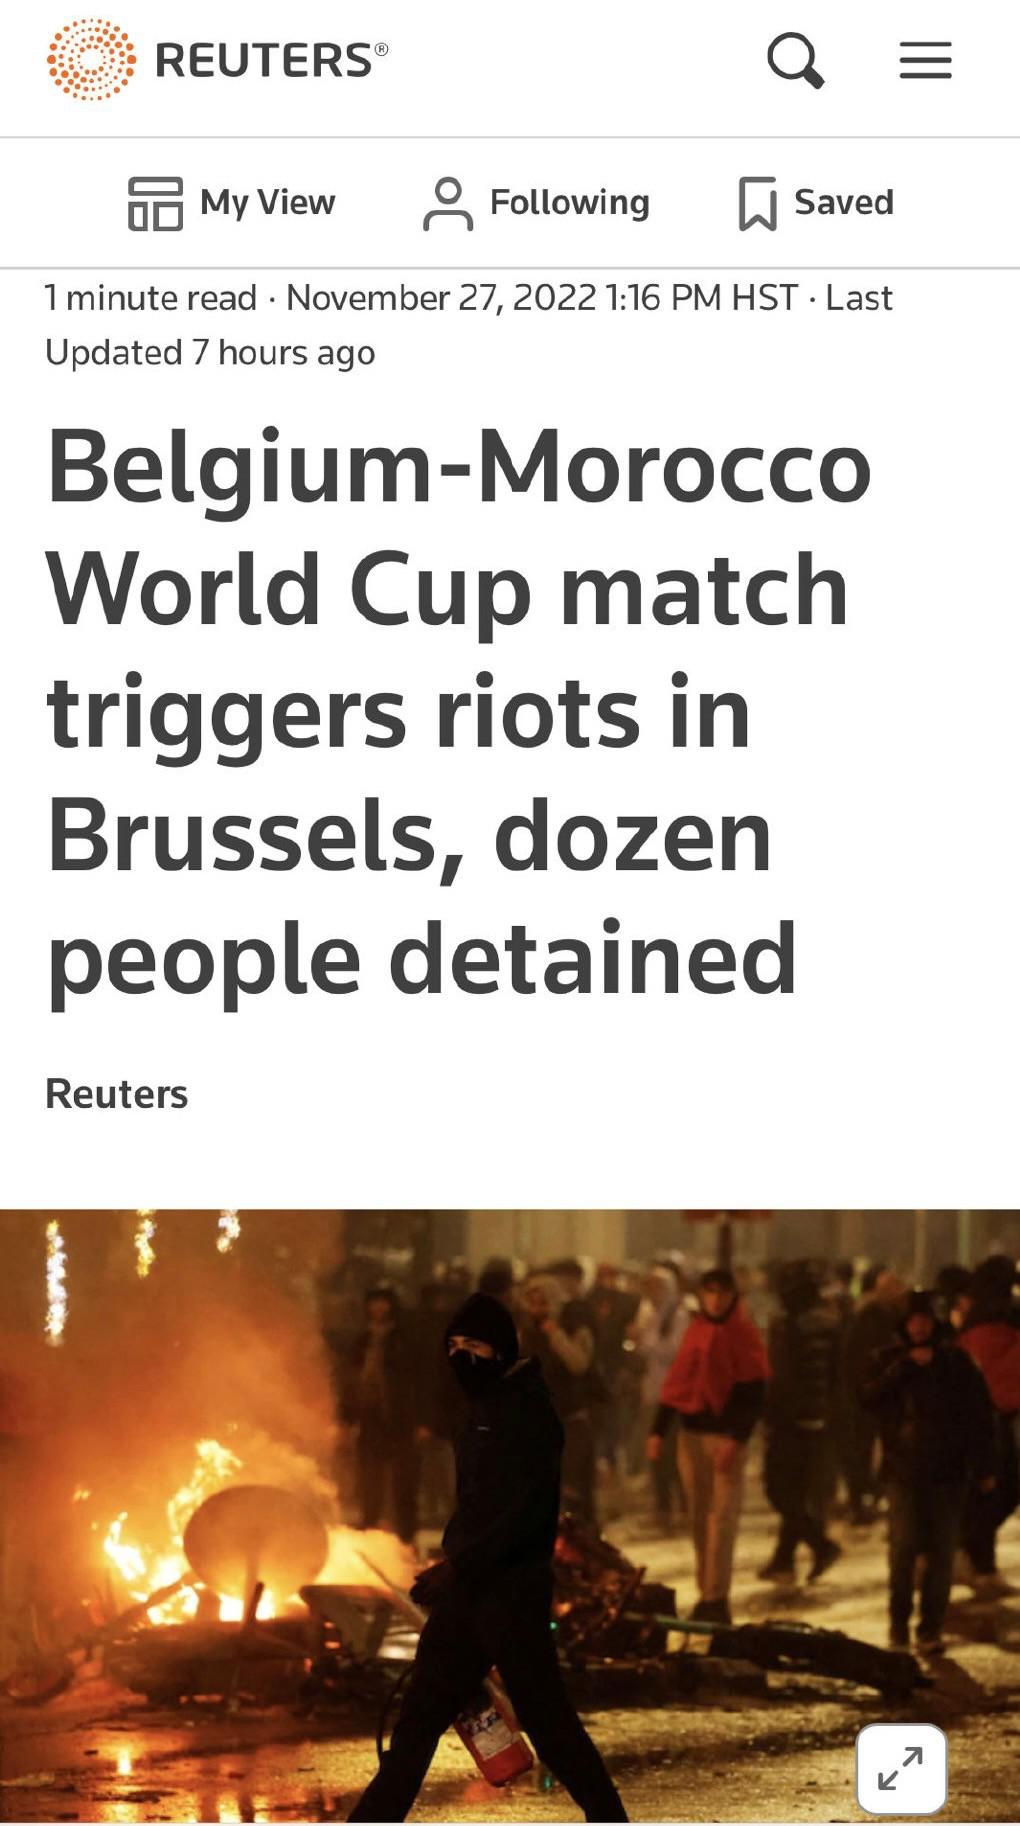 混乱！摩洛哥击败比利时，双方球迷大打出手，打砸商店烧汽车暴动(1)